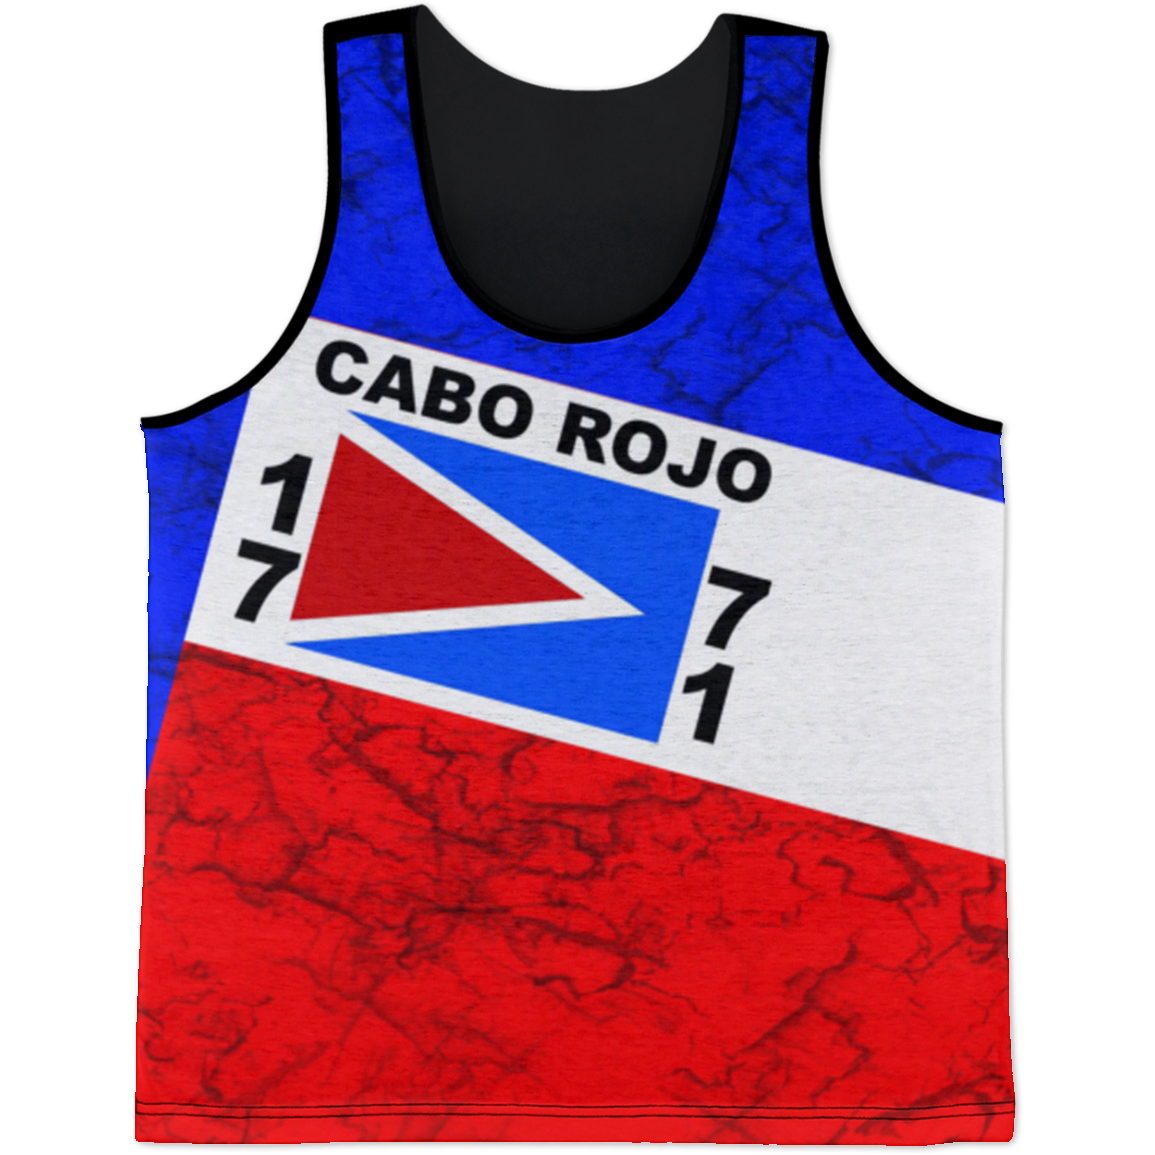 Cabo Rojo Tank Top - Puerto Rican Pride